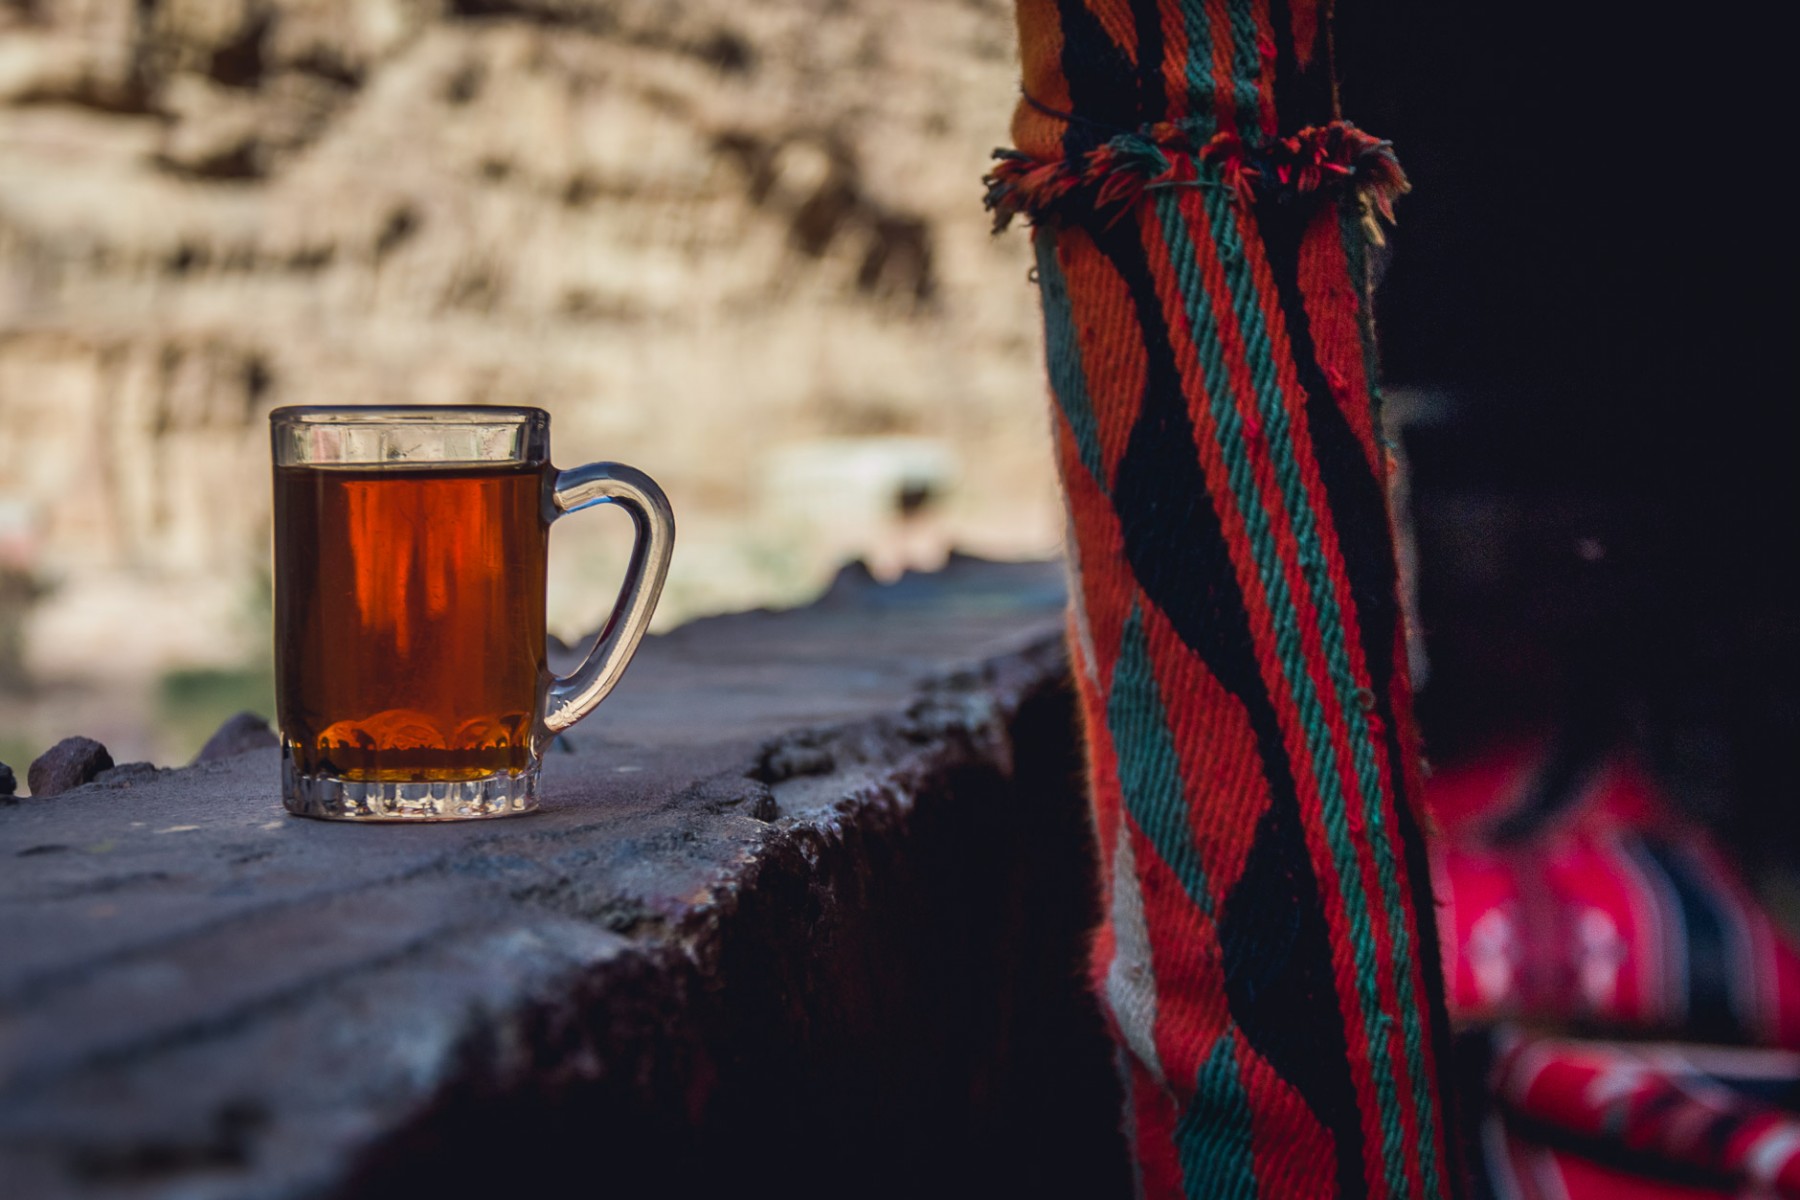 Bedouin tea in Wadi Rum, Jordan 